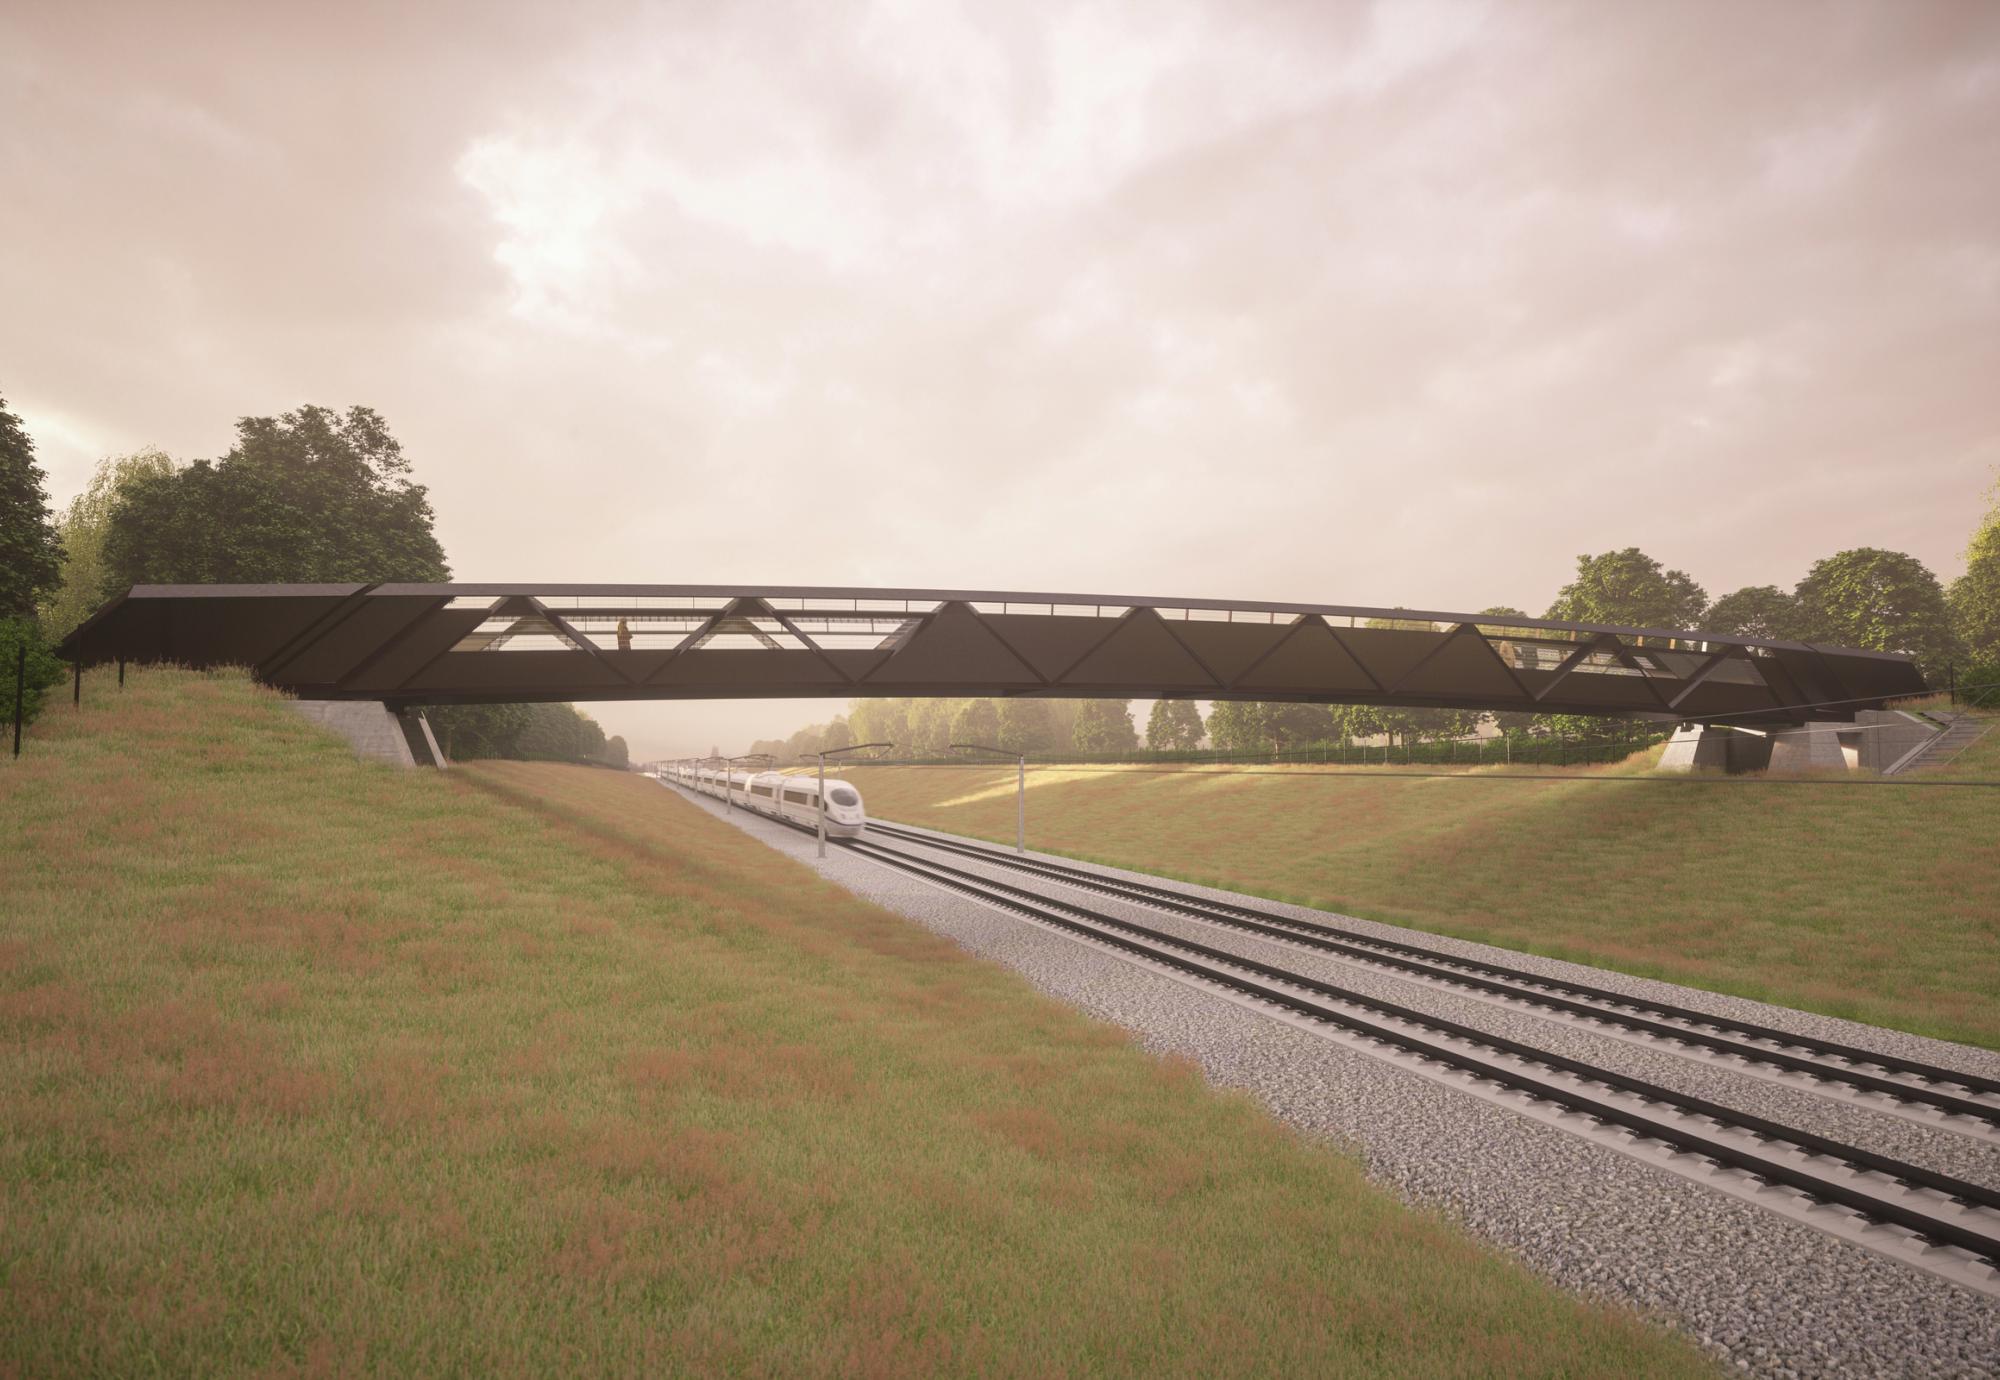 Rural footbridge design, via HS2 